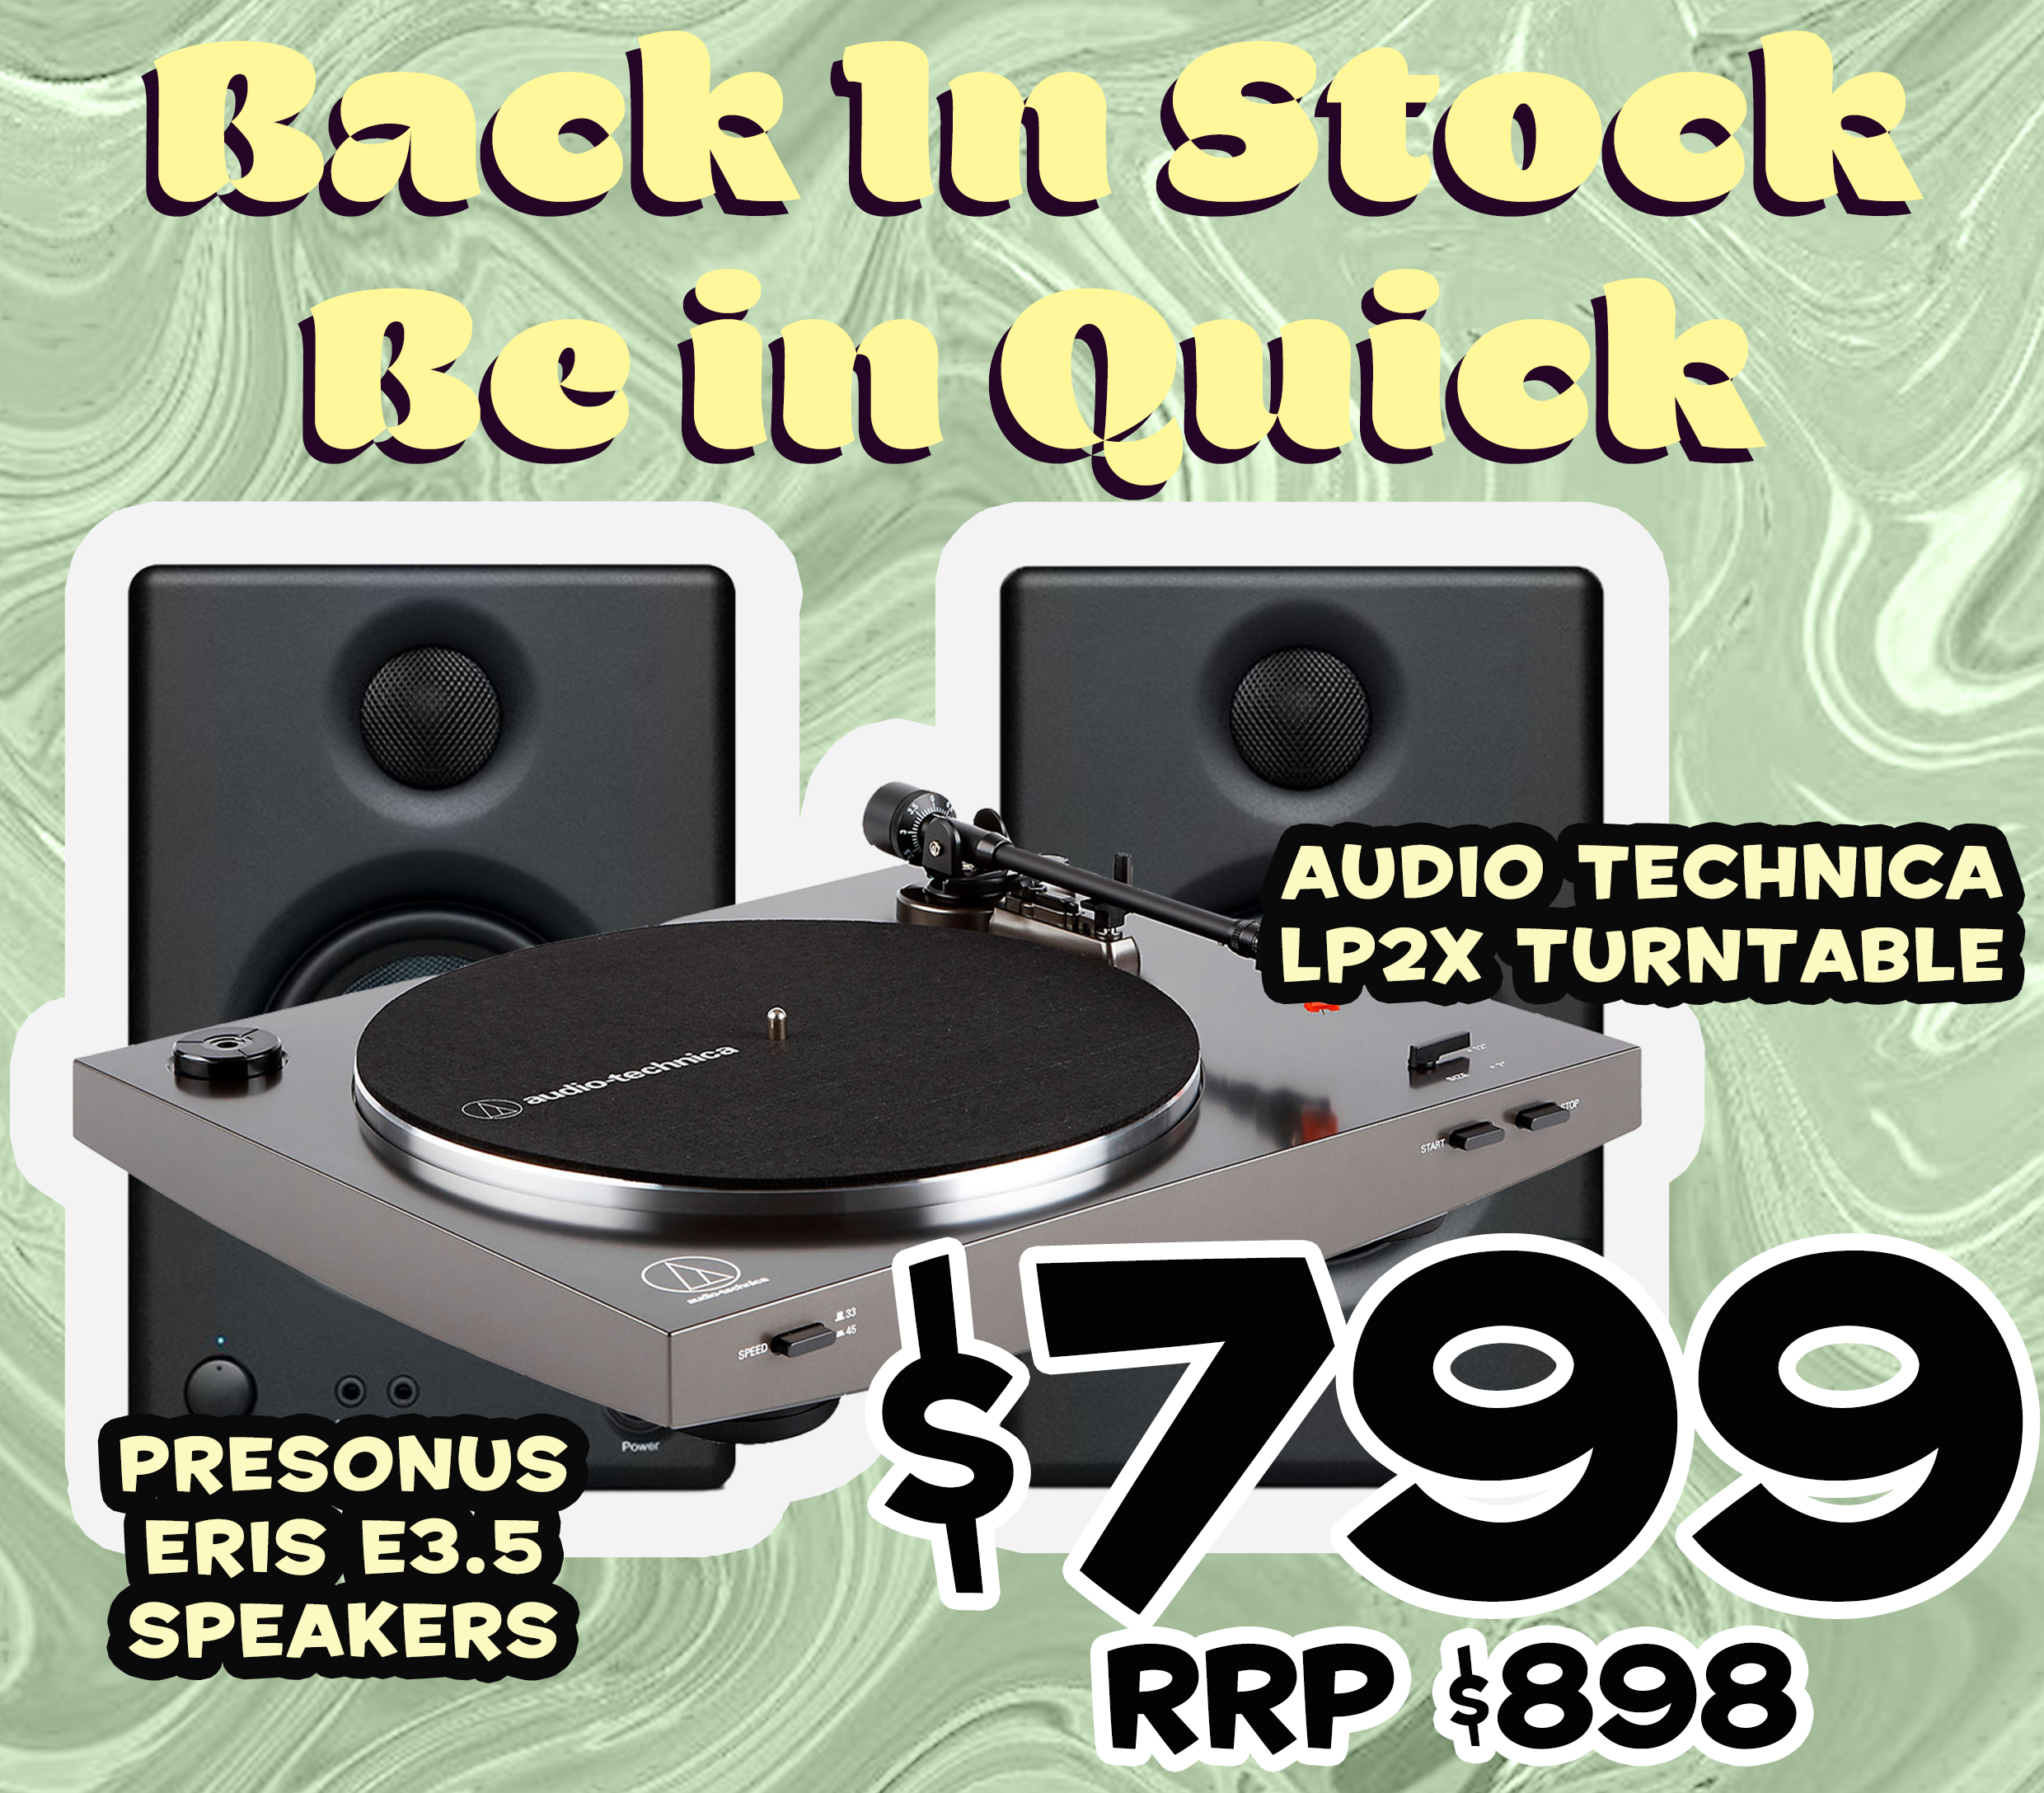 Audio Technica Lp2x / Presonus Eris E3.5 Package Deal